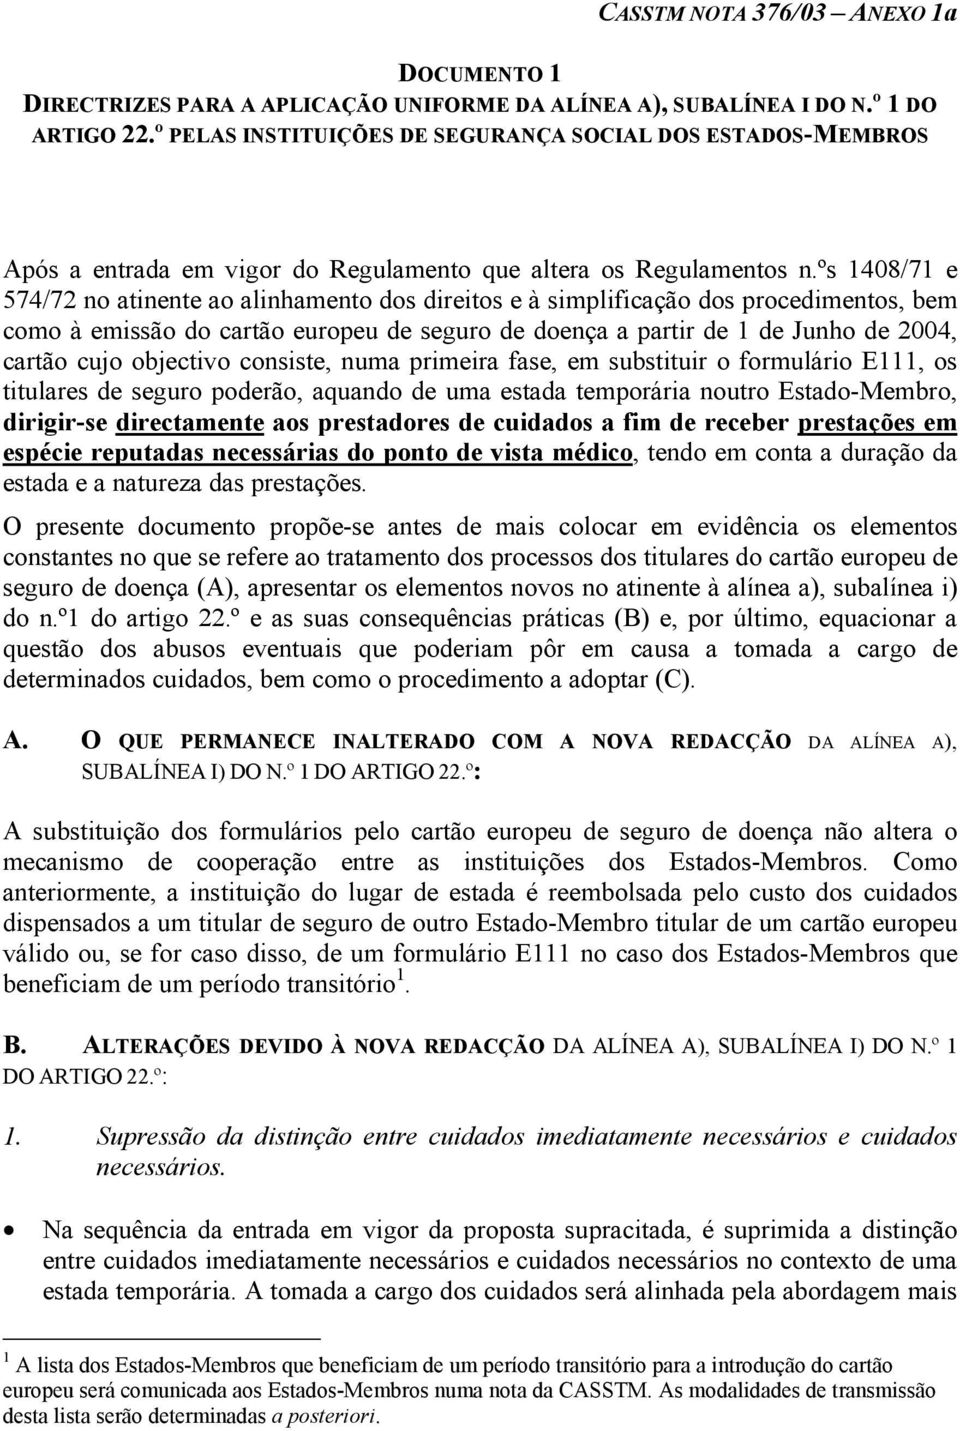 ºs 1408/71 e 574/72 no atinente ao alinhamento dos direitos e à simplificação dos procedimentos, bem como à emissão do cartão europeu de seguro de doença a partir de 1 de Junho de 2004, cartão cujo